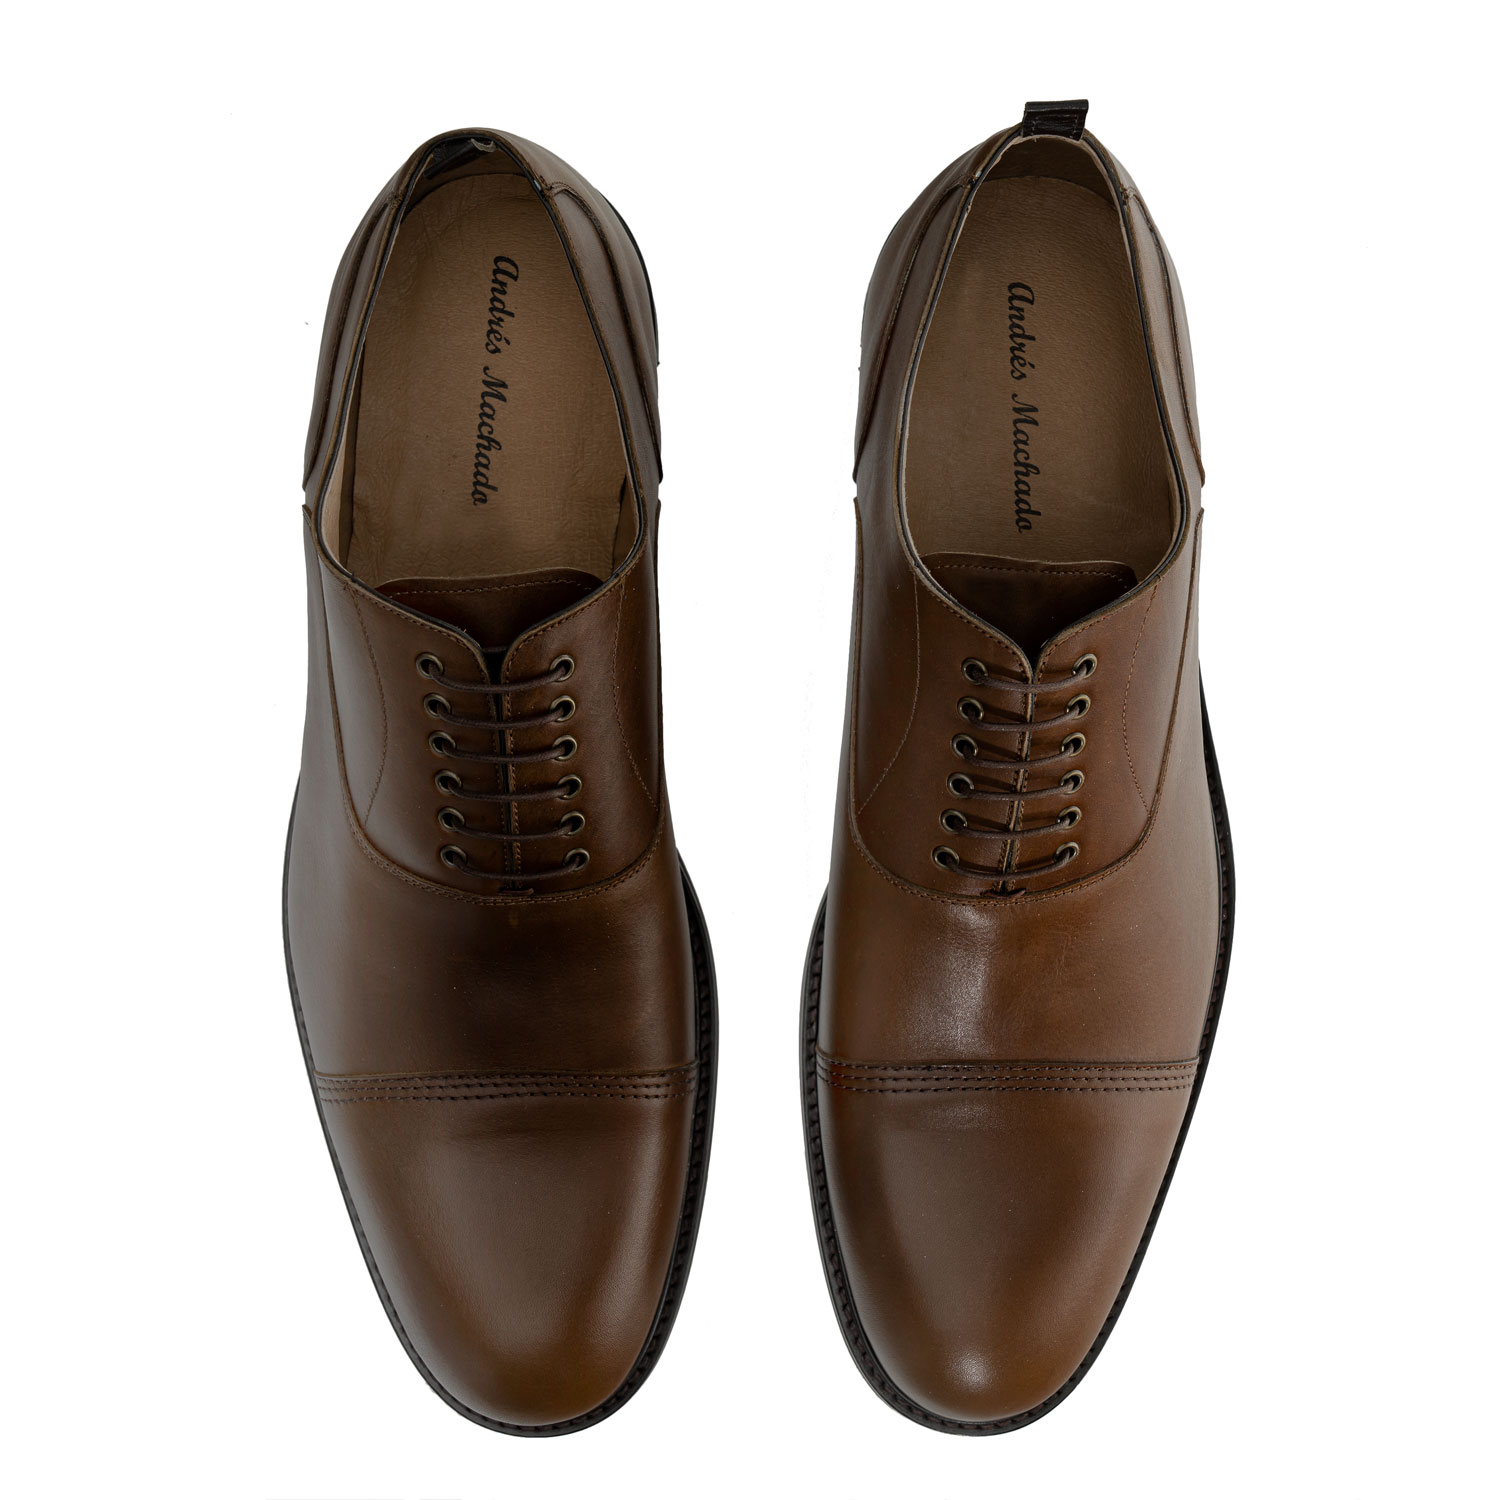 Zapatos estilo Oxford en Cuero de color Marron 